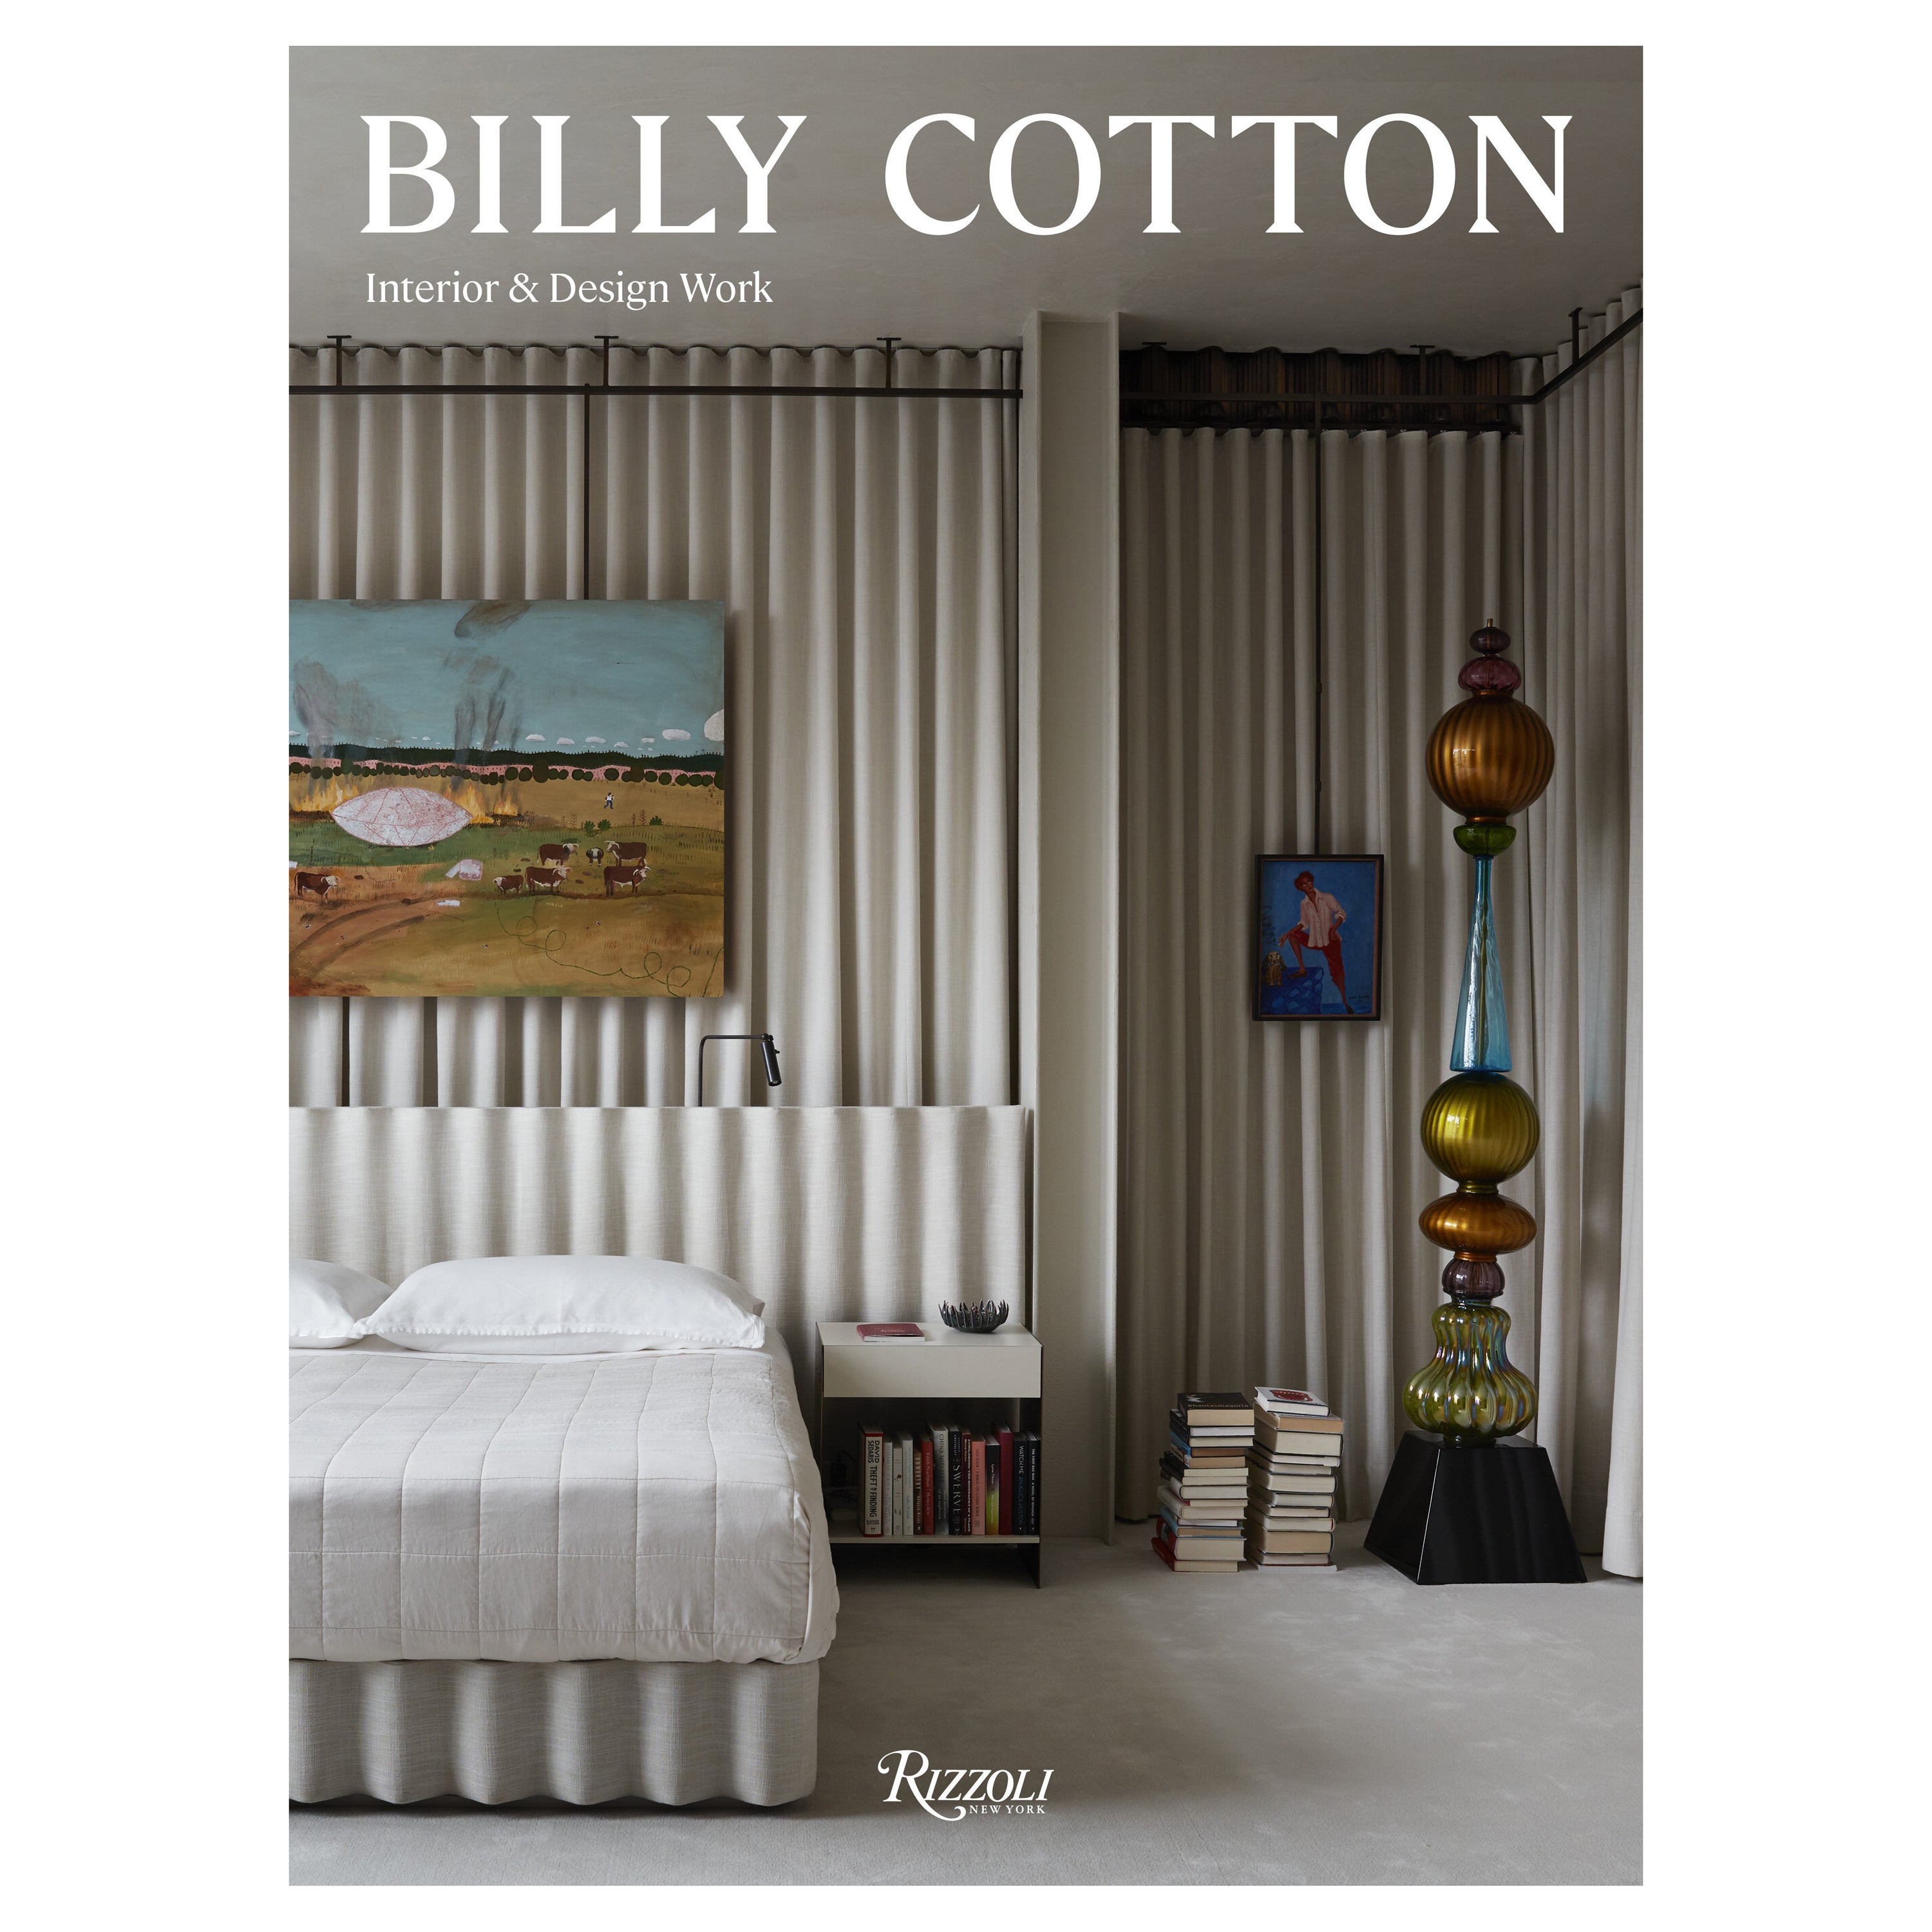 Billy Cotton Interior and Design Work